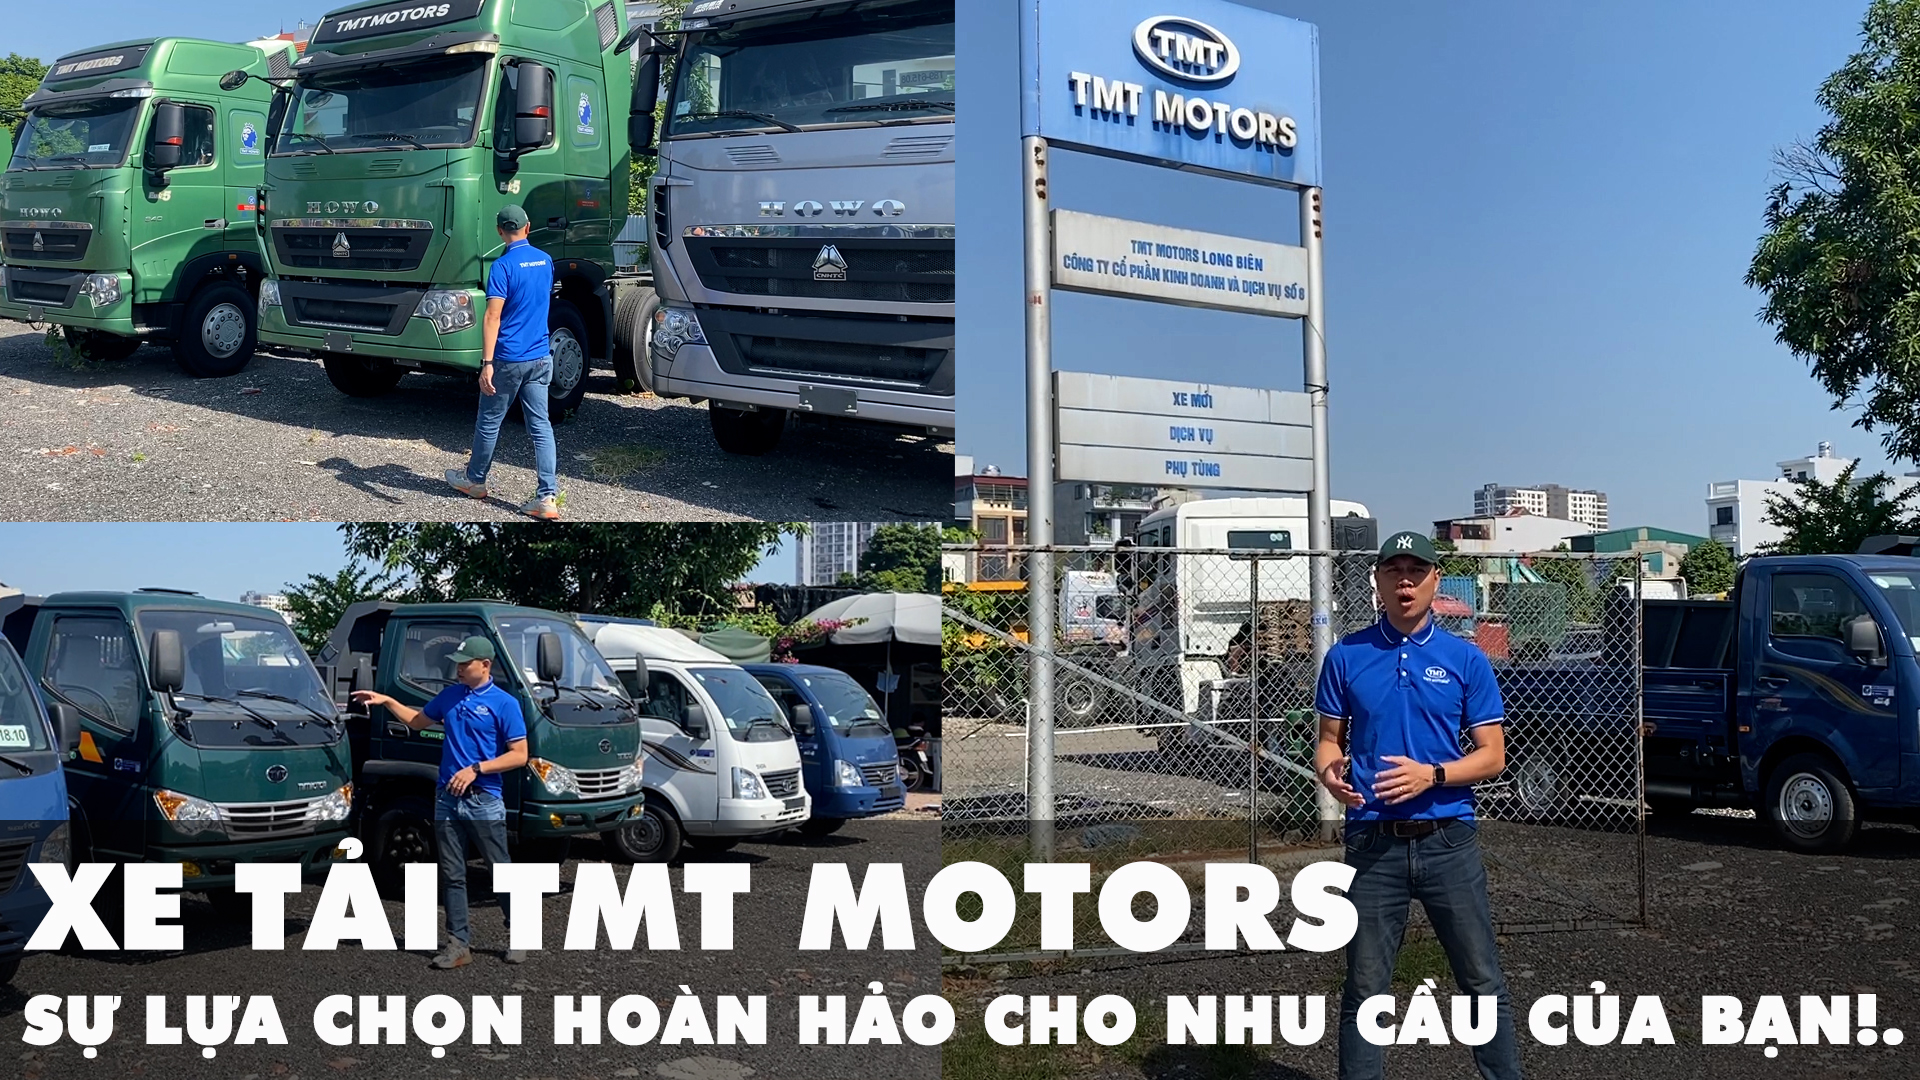 Giới thiệu các sản phẩm xe tải TMT Motors